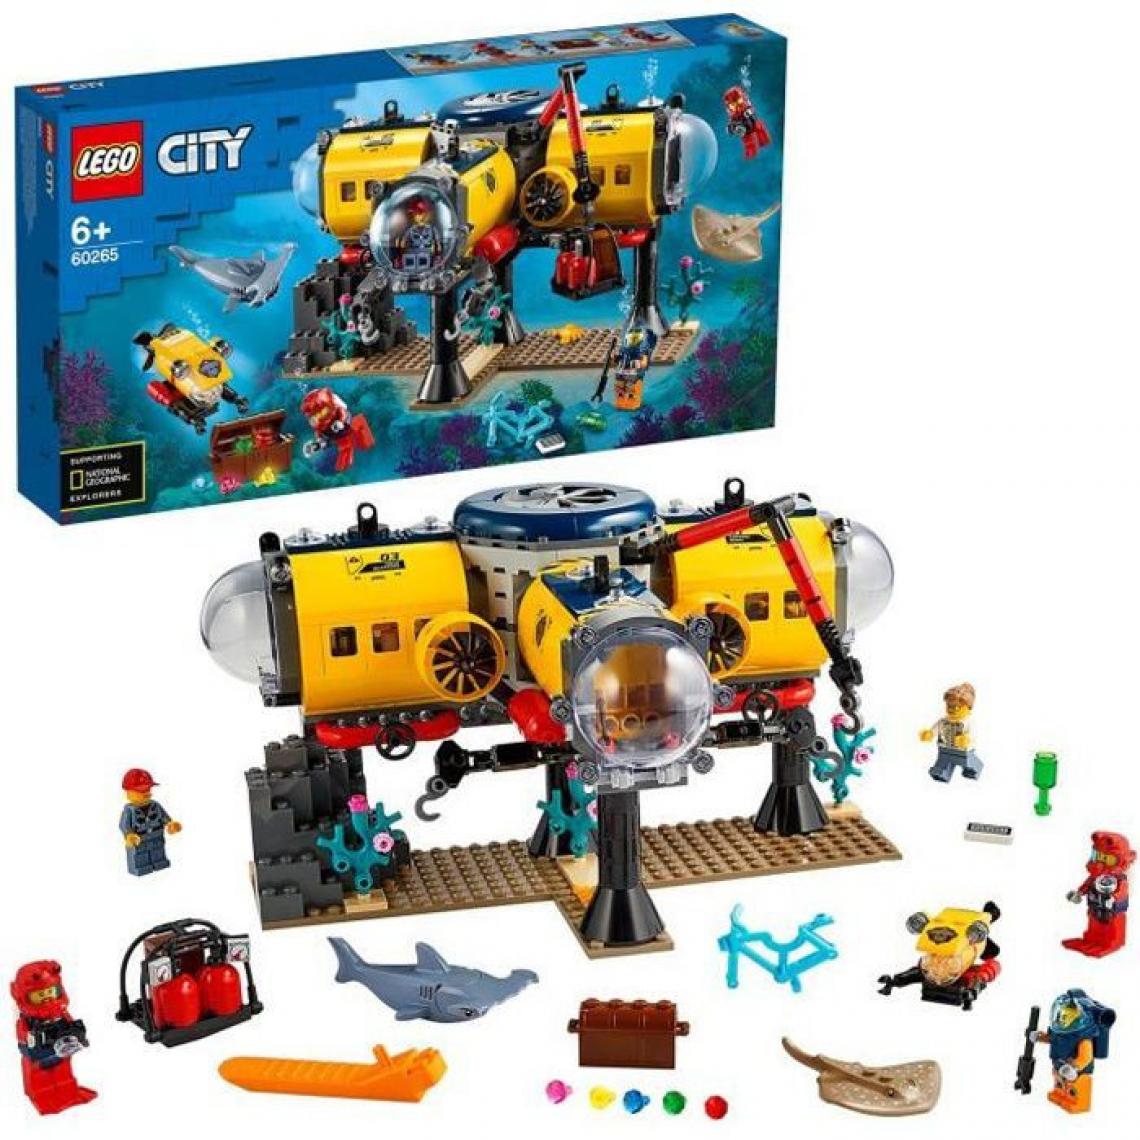 Lego - LEGO City 60265 La base d'exploration océanique, Sous Marin avec Mini-figurines Animaux, Jouet pour Enfants de 6 ans et plus - Briques Lego